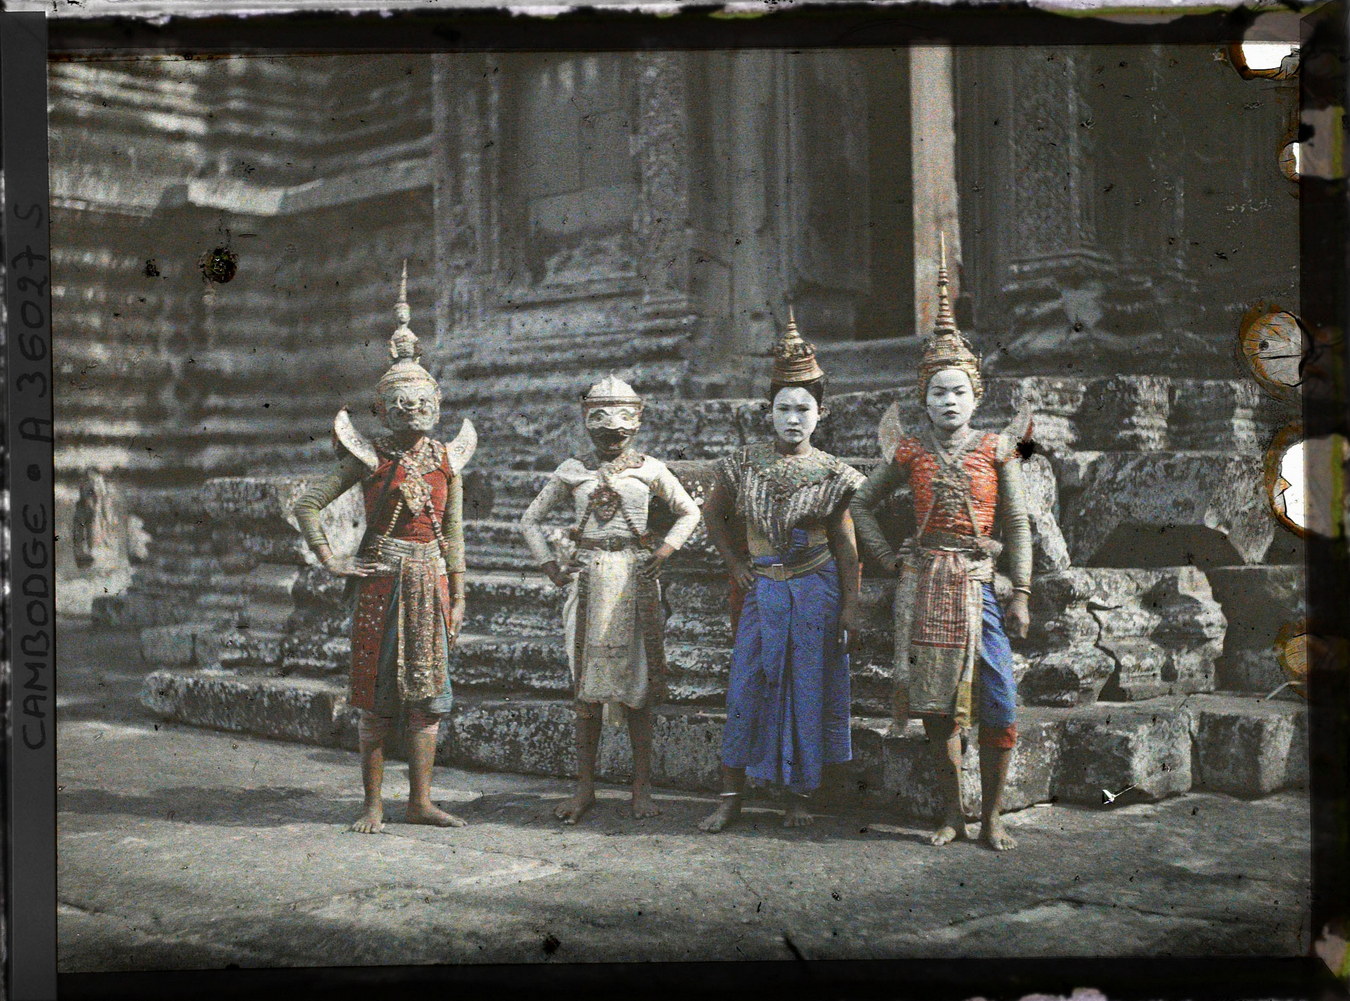 Loạt ảnh màu đặc biệt về kỳ quan Angkor Wat một thế kỷ trước